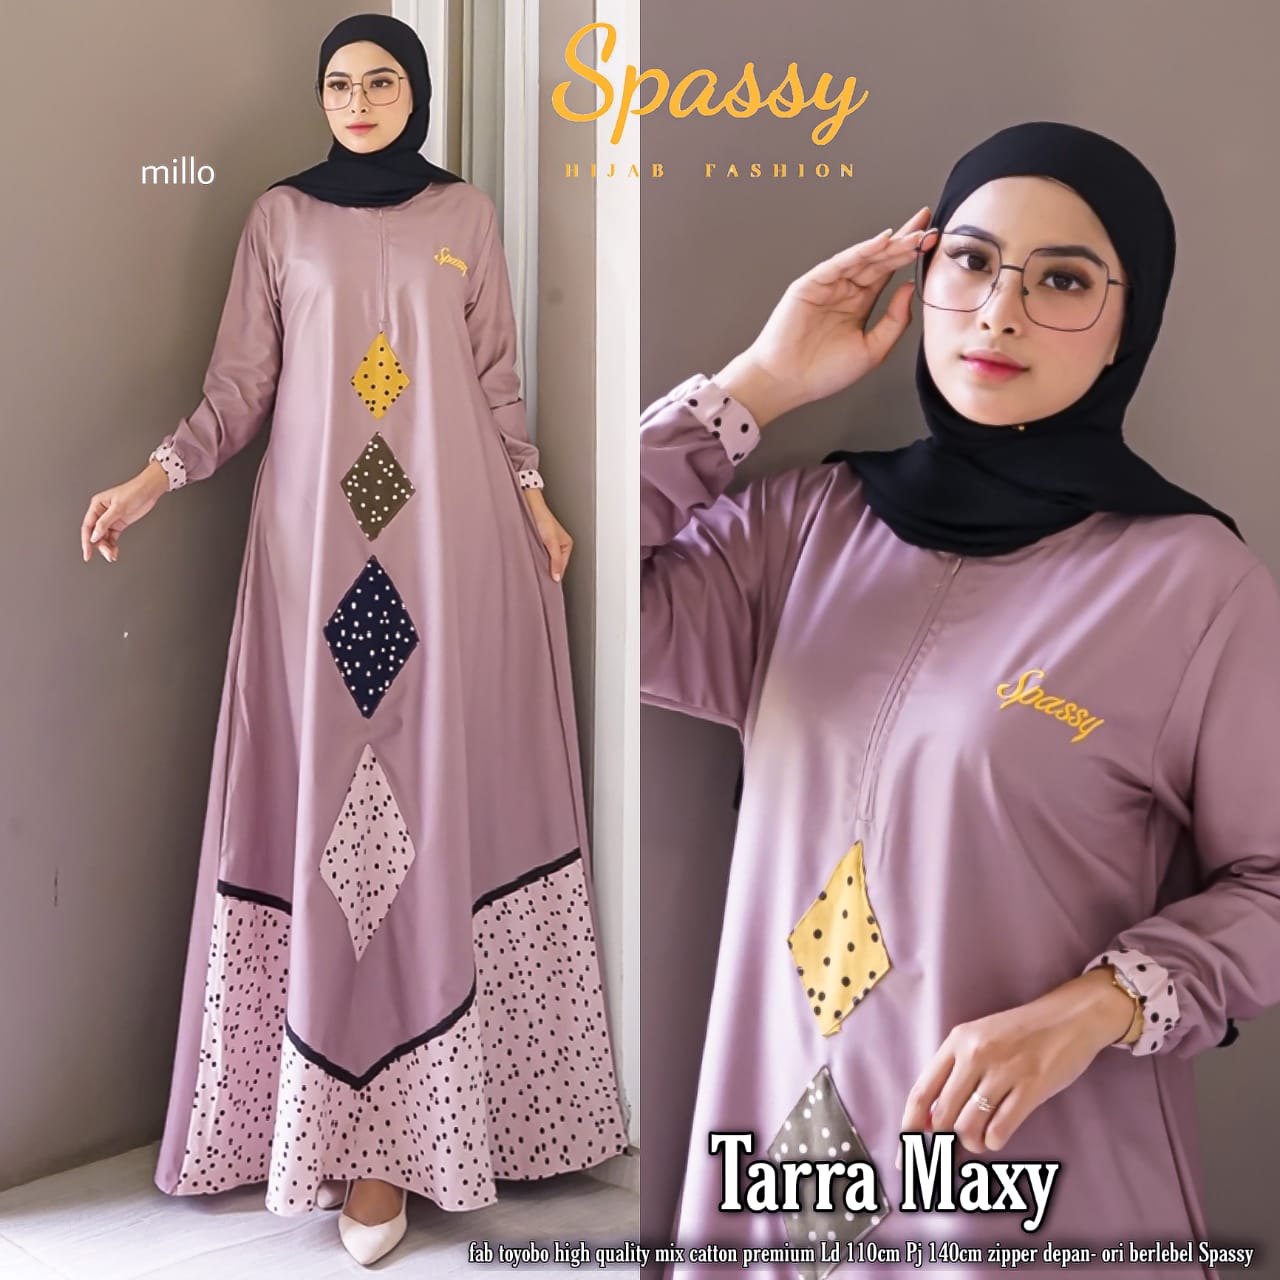 Spassy Hijab Fashion